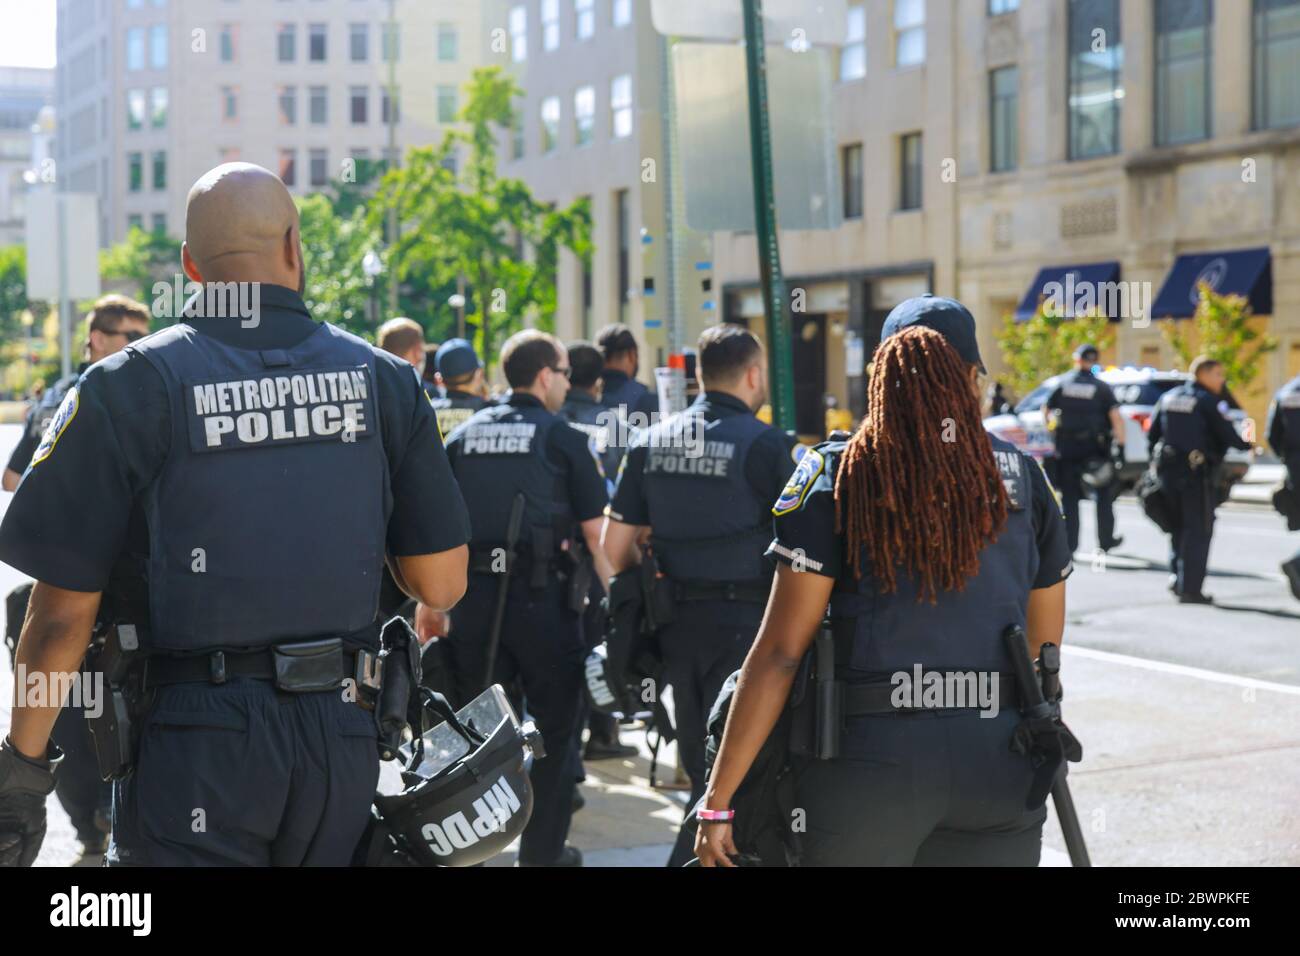 WASHINGTON D.C., USA - 31 MAGGIO 2020: La polizia metropolitana del distretto di Columbia blocca la strada per la Casa Bianca durante le proteste contro la morte di George Floyd a Washington D.C. Foto Stock